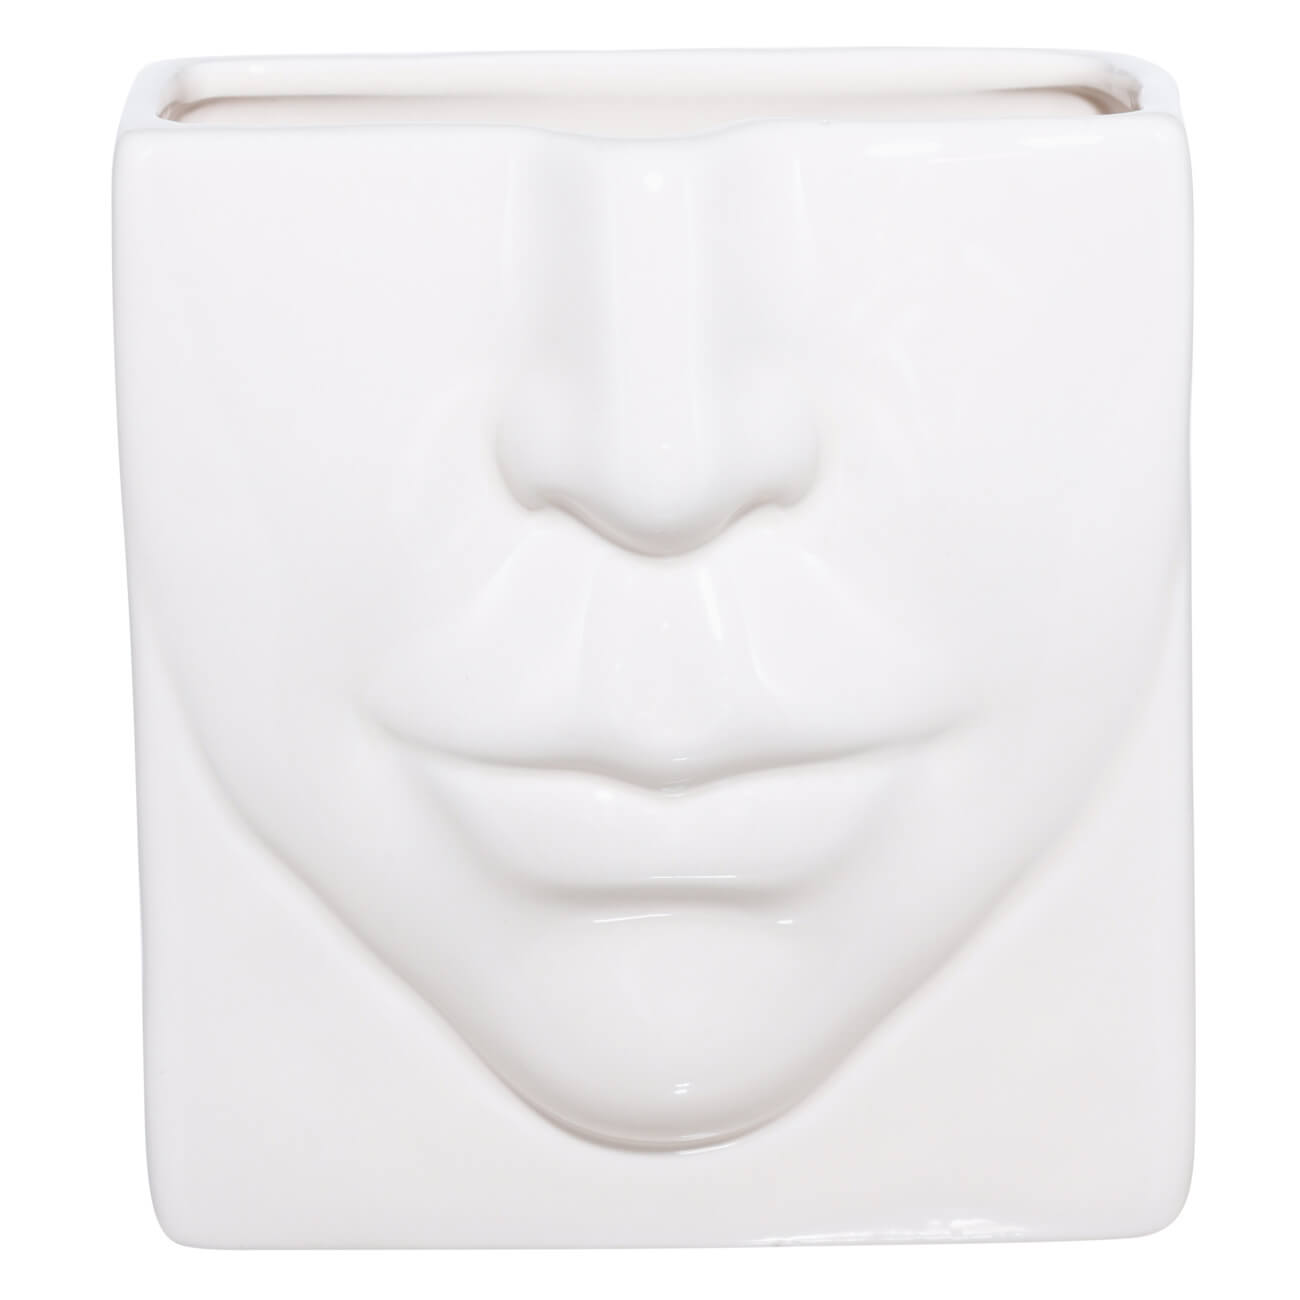 Подставка для косметических кистей, 13х11 см, керамика, молочная, Часть лица, Face подставка салфетница adelica 21 5×15×7 5 см дуб